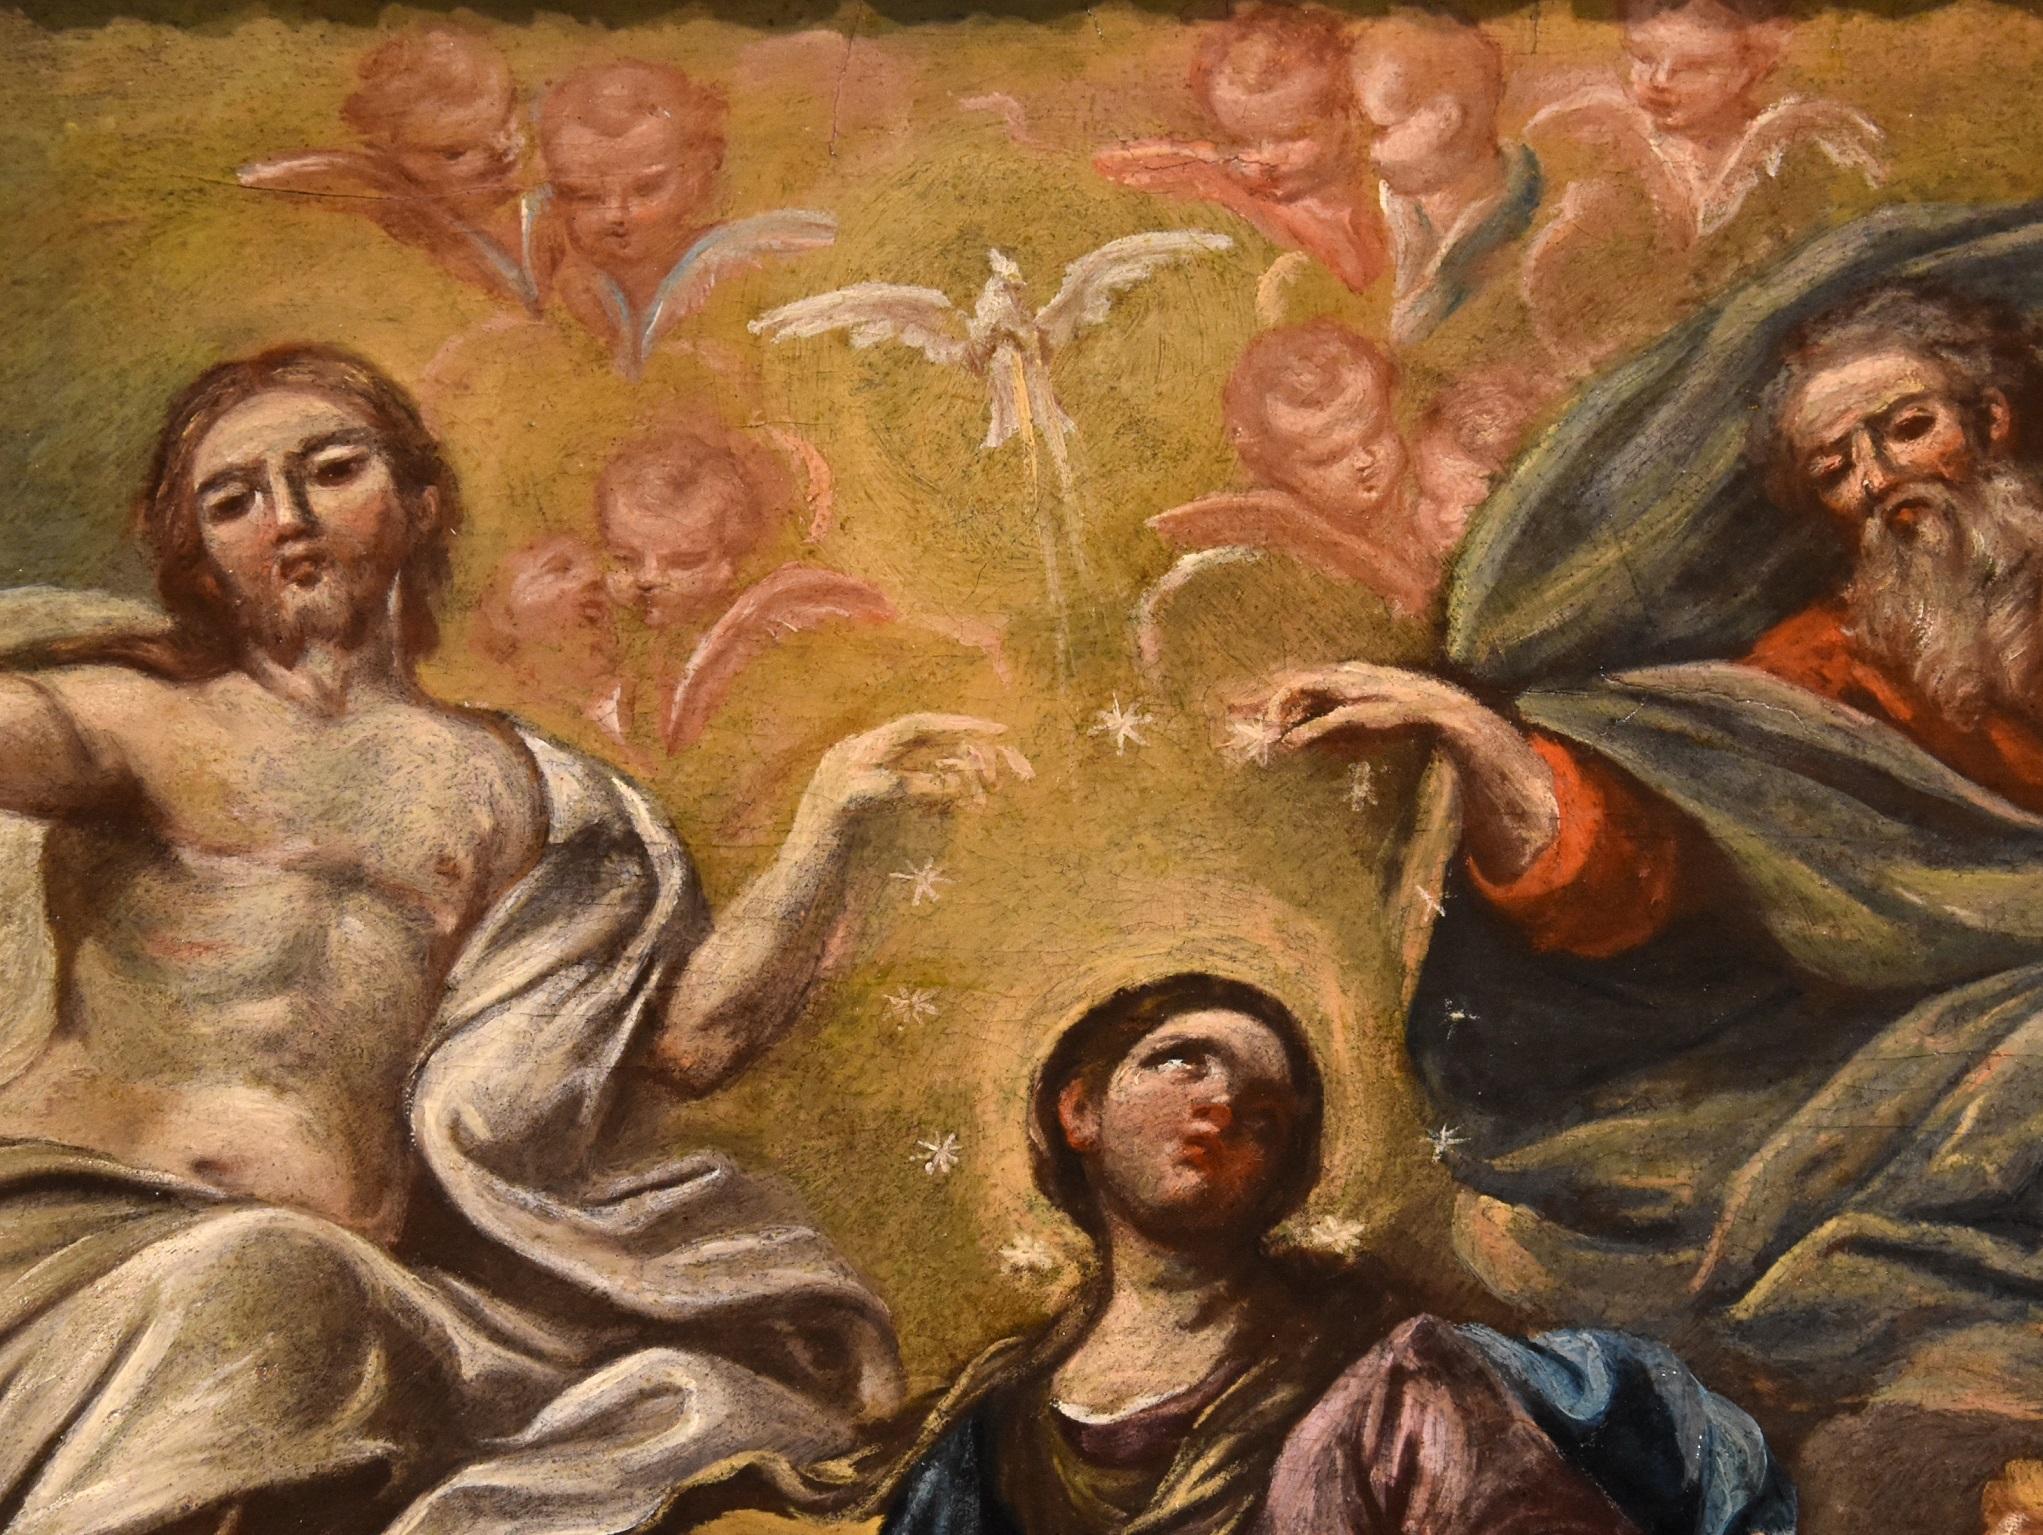 Virgin De Caro Paint Oil on camvas Old master 18th Century Religious Italian Art 6